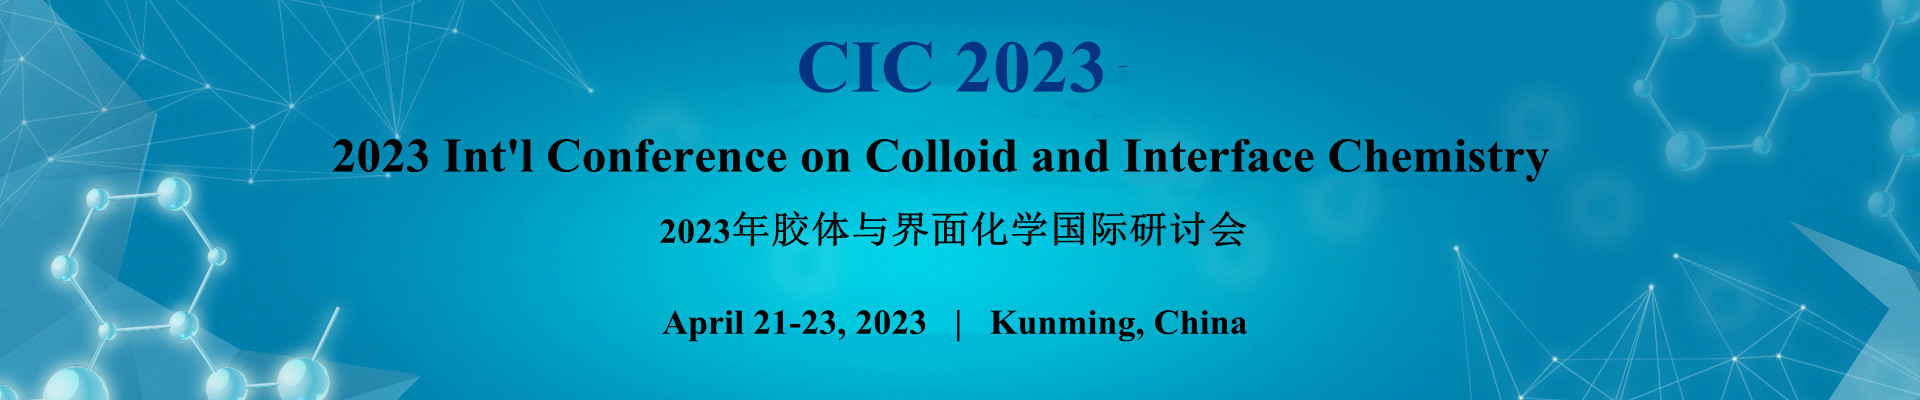 2023年胶体与界面化学国际研讨会(CIC 2023)